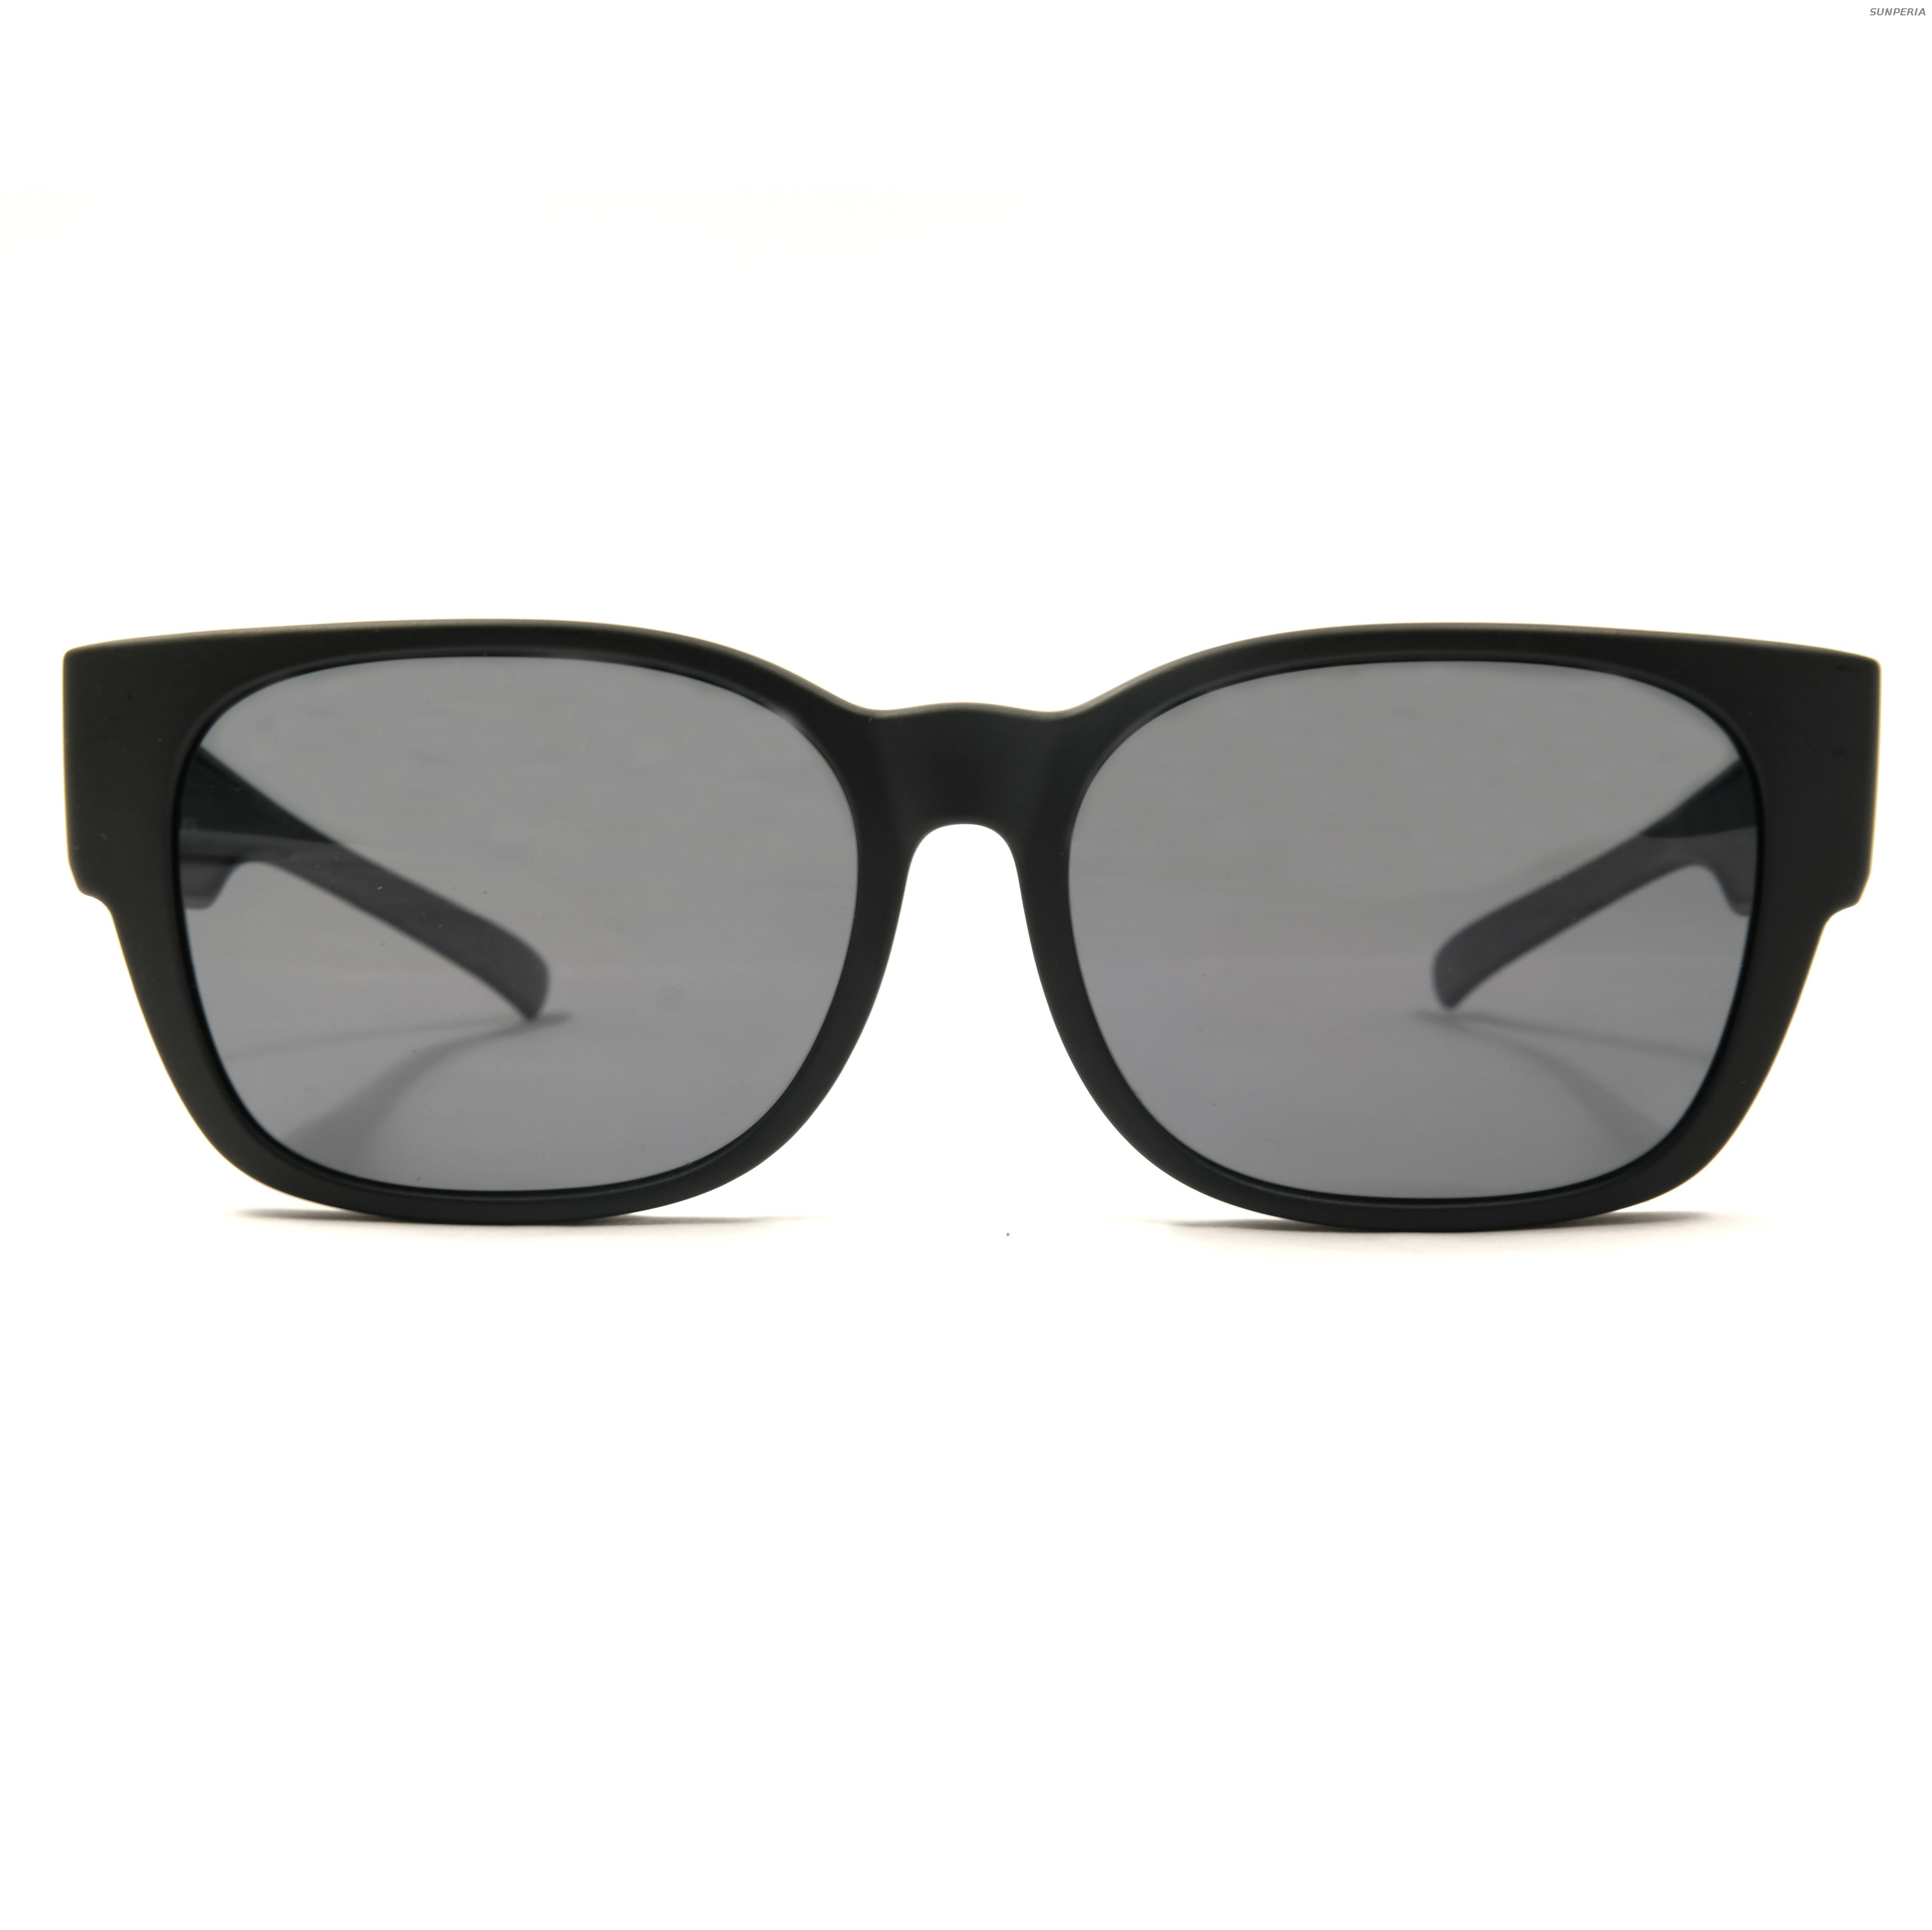 Black SWISS TR Fitover Gafas de sol Miopía Adecuado Fábrica 900 Gafas Las mejores empresas de gafas